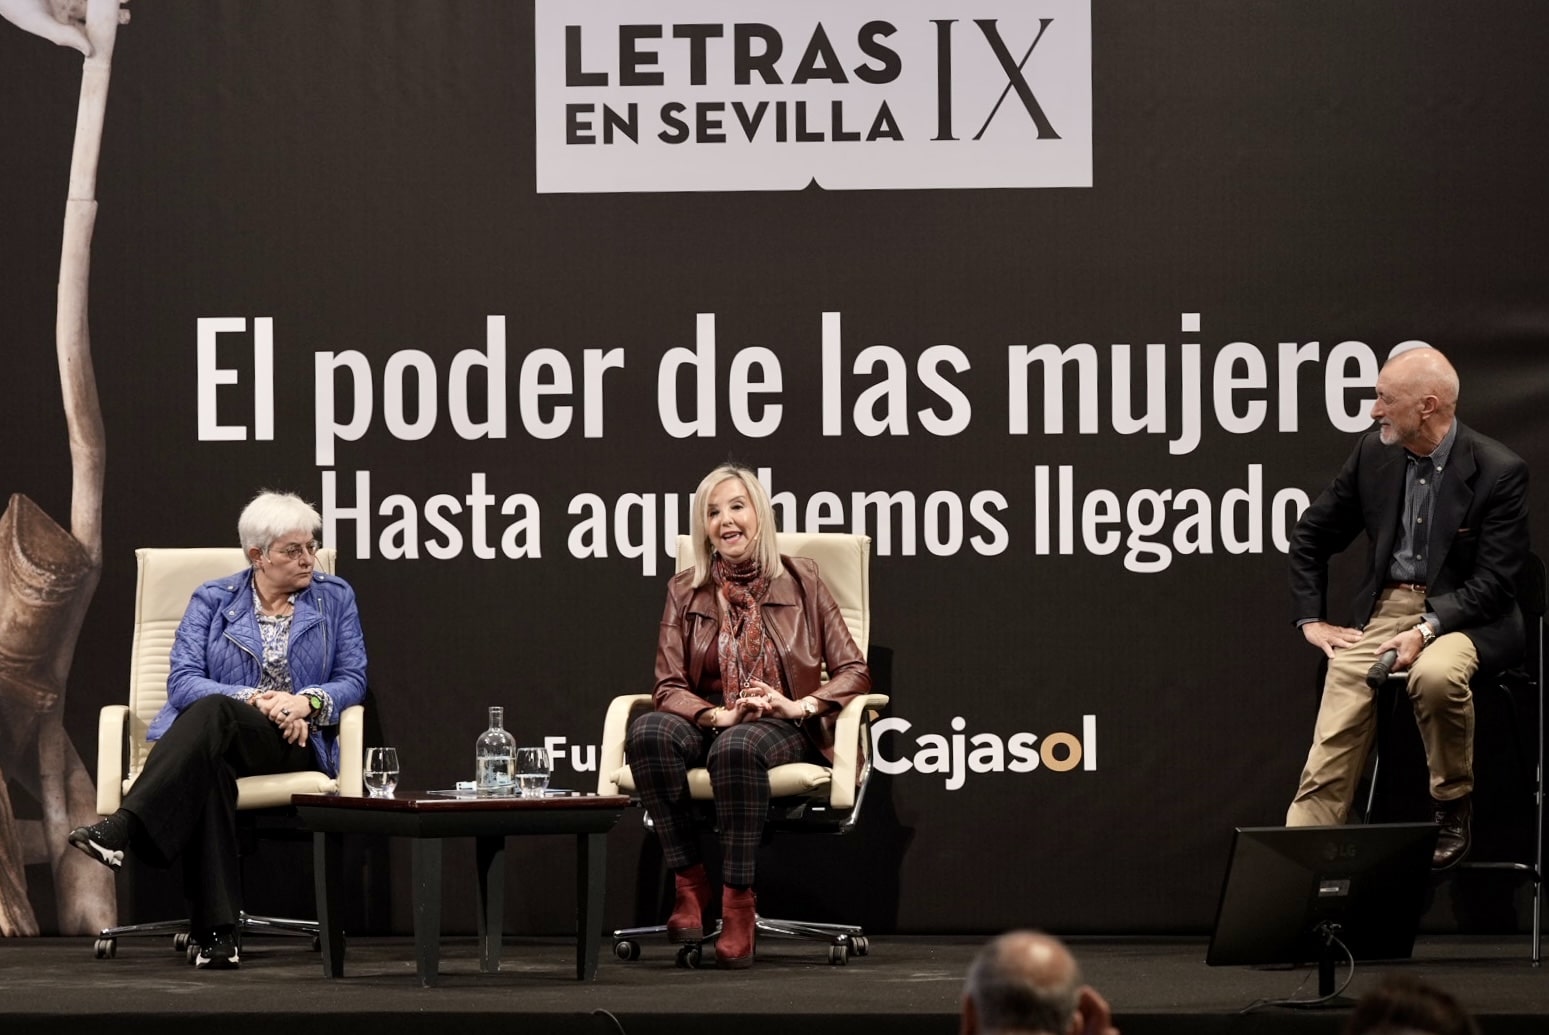 Letras en Sevilla IX: "El poder de las mujeres"